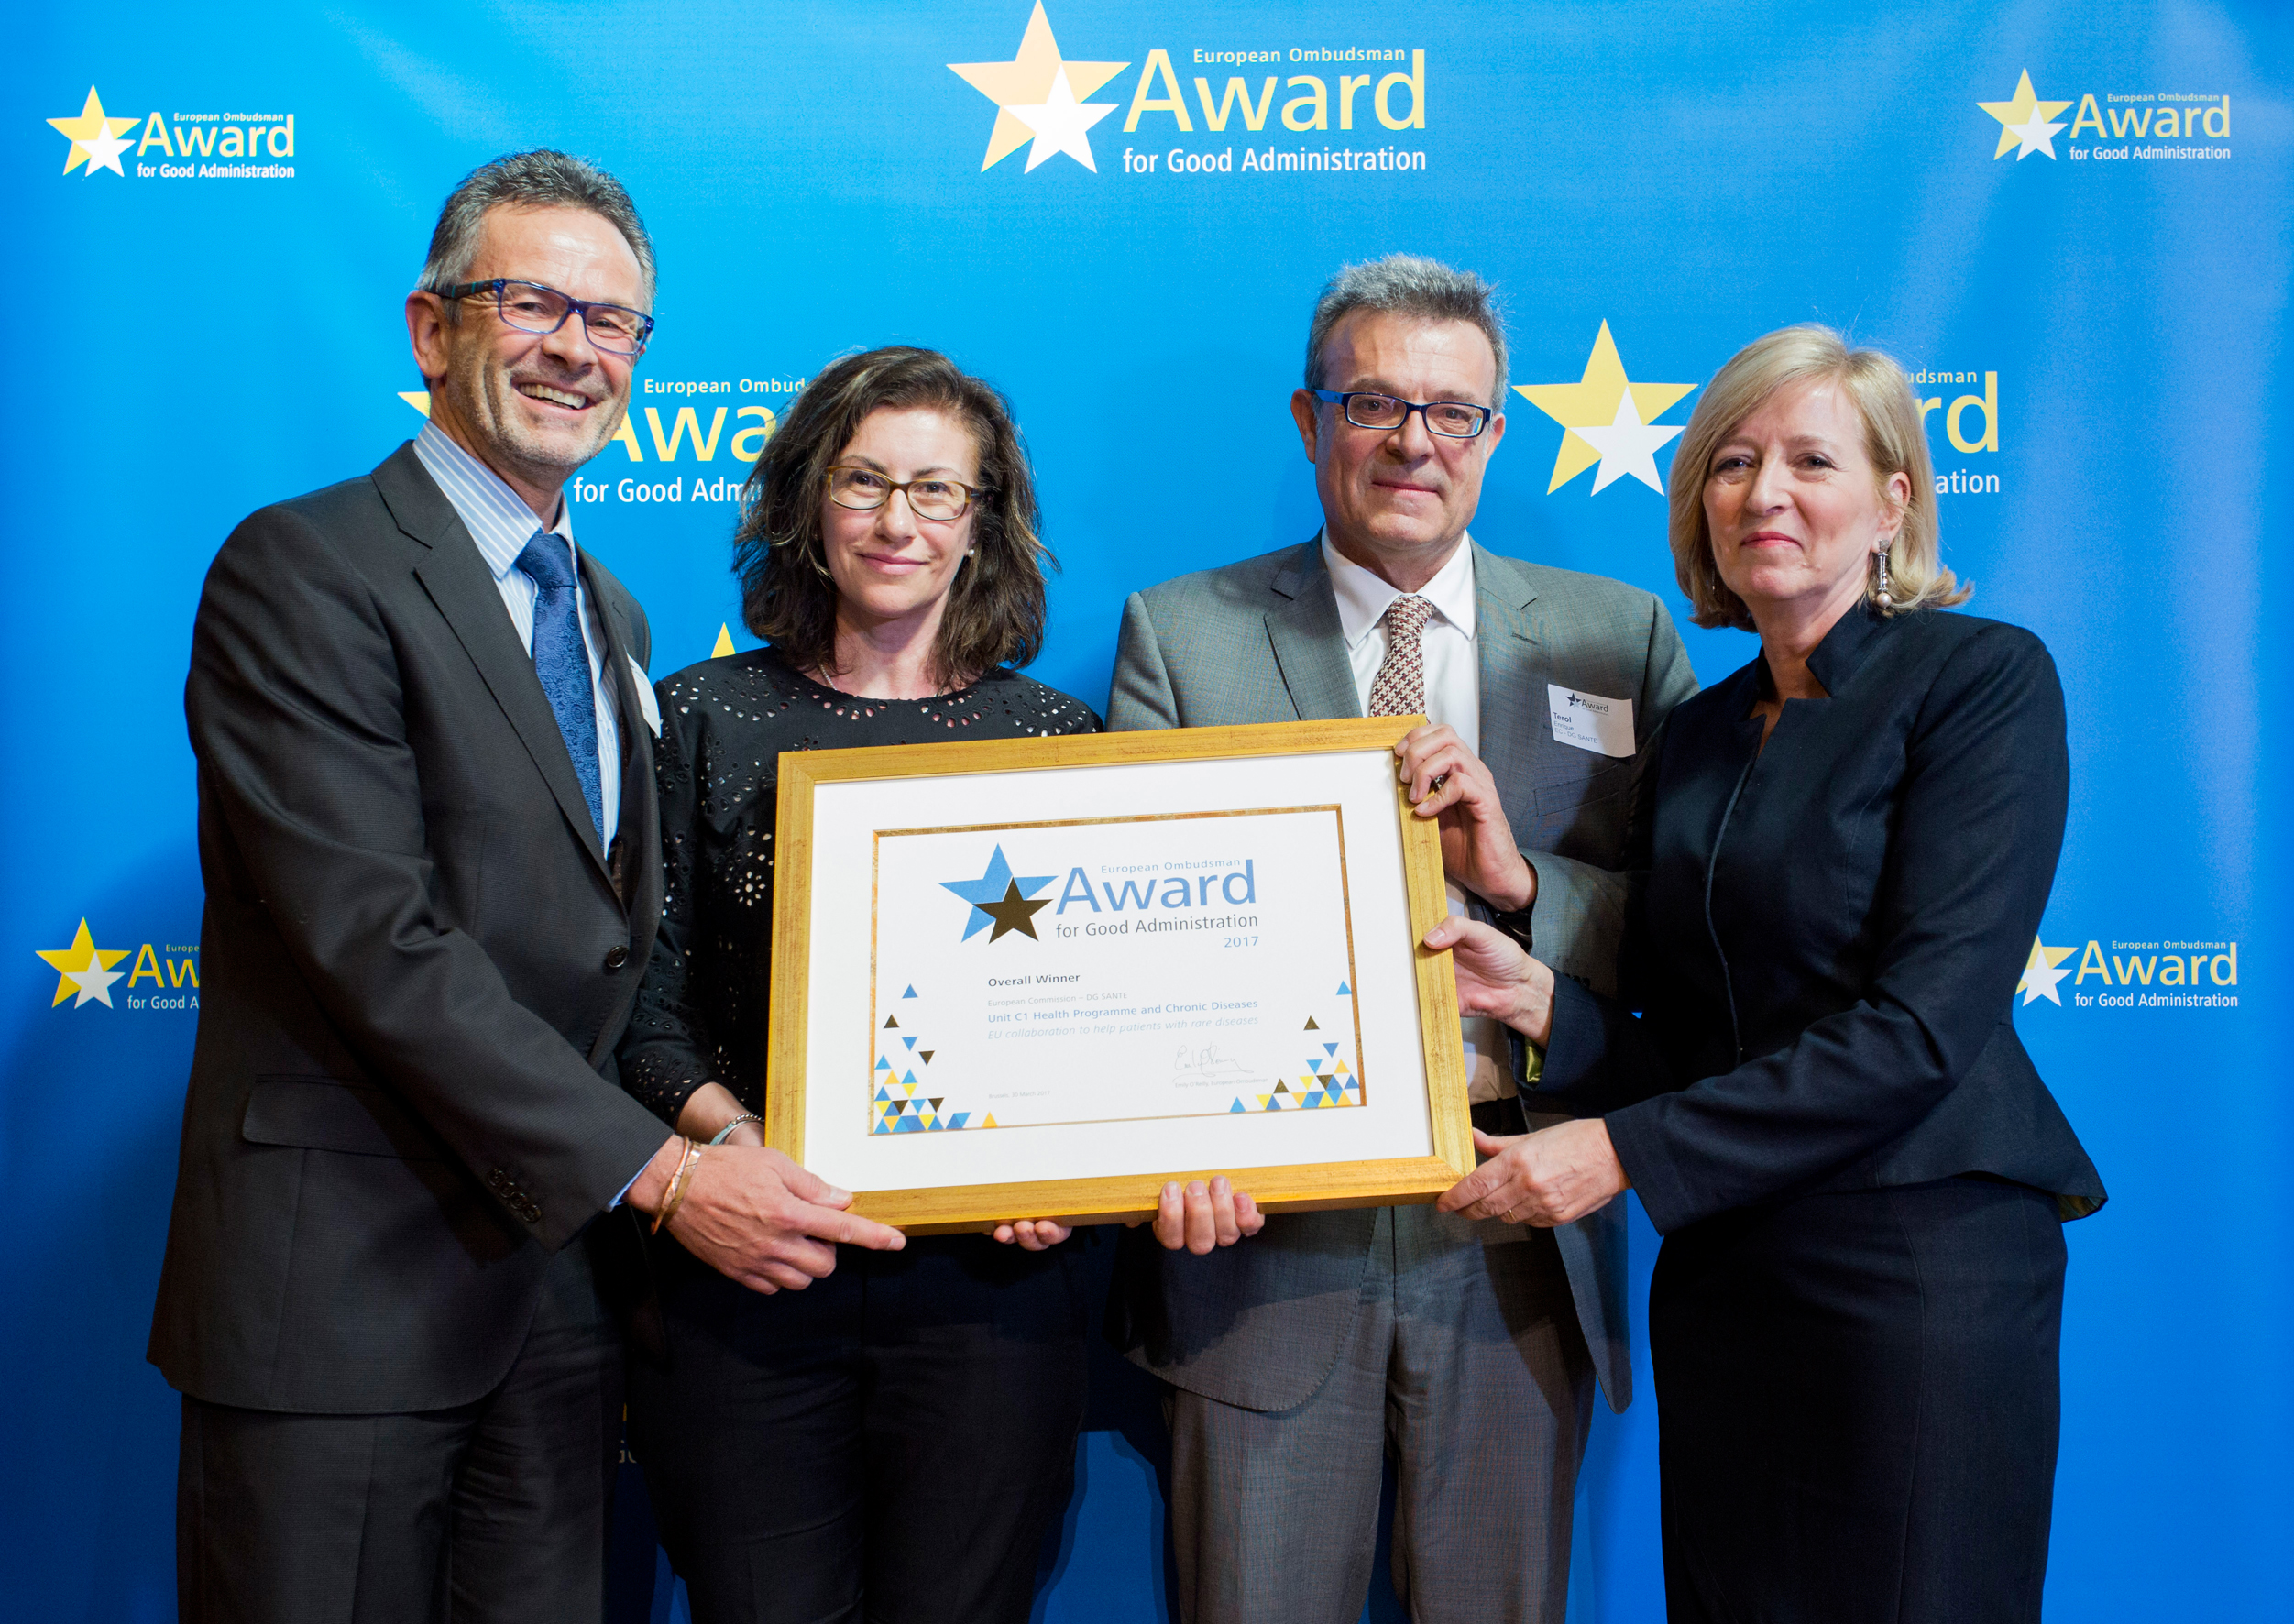 Euroopan oikeusasiamiehen hyvän hallinnon yleispalkinnon vuoden 2017 voittajat komission terveyden ja elintarviketurvallisuuden pääosastosta vastaanottamassa palkintoaan Euroopan oikeusasiamieheltä Emily O’Reillylta.